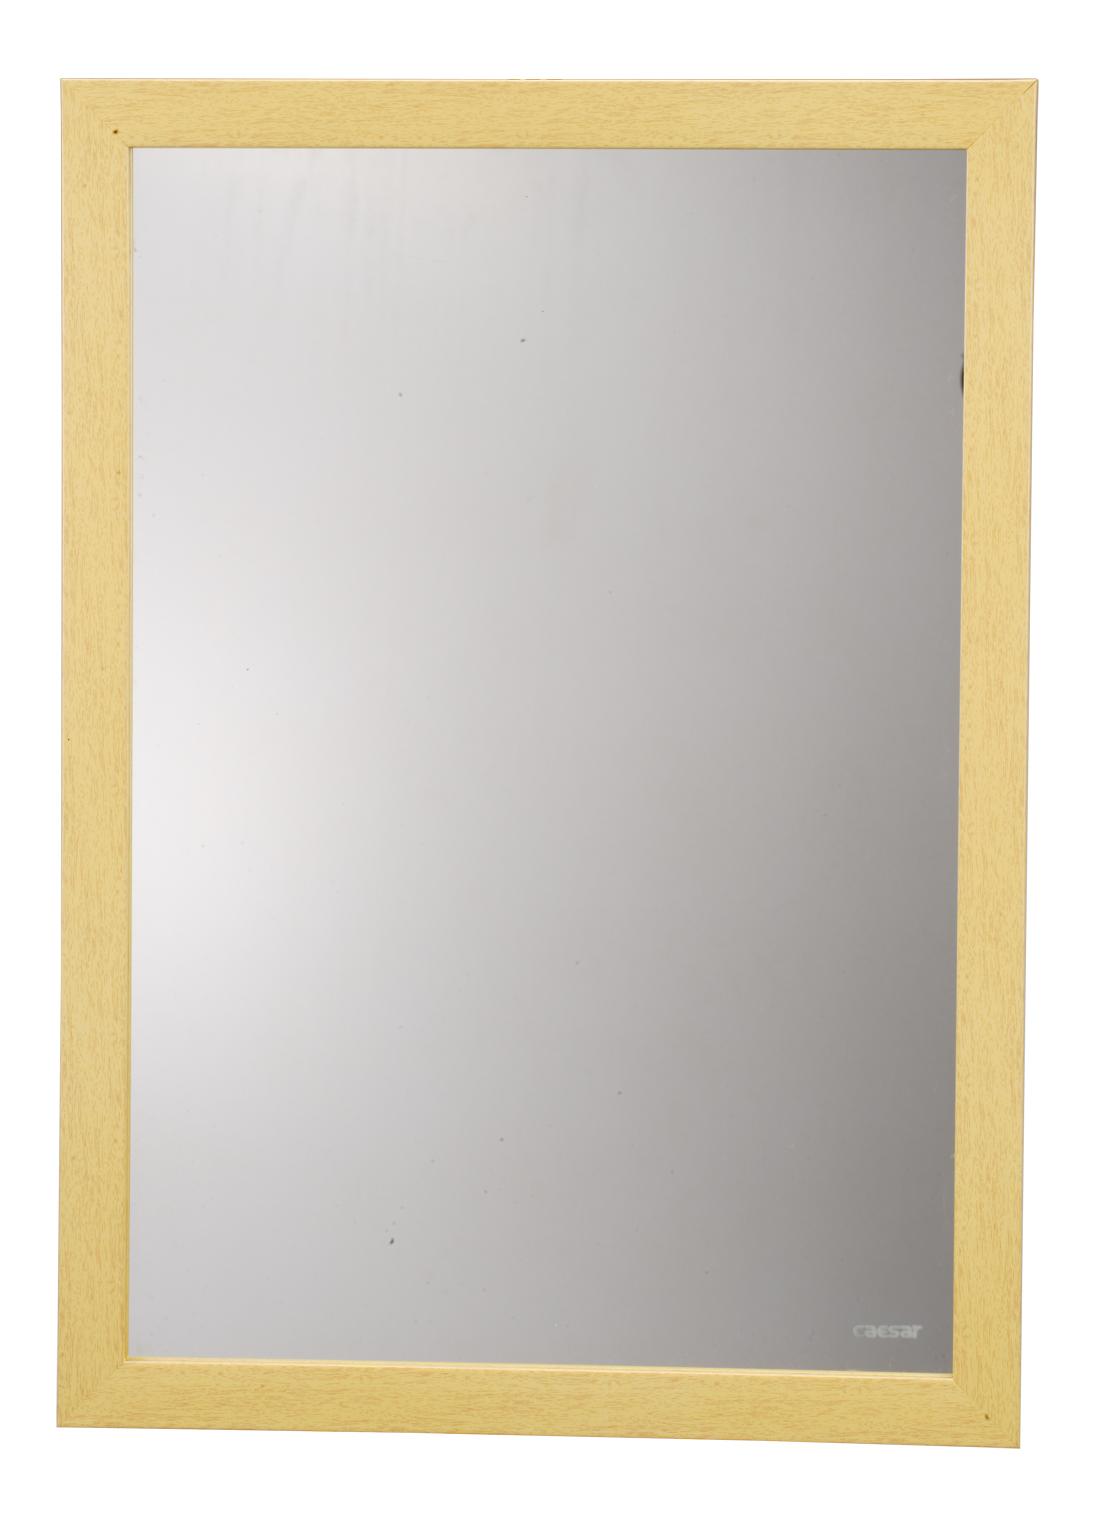 Gương phòng tắm khung Caesar M811 là sản phẩm đang được nhiều người lựa chọn bởi vẻ đẹp sang trọng và chất lượng cao. Khung gương được thiết kế vô cùng tinh tế và độ bền của sản phẩm được đảm bảo. Hãy cùng chiêm ngưỡng hình ảnh của gương phòng tắm khung Caesar M811 để có thêm cho mình nhiều thông tin hữu ích.